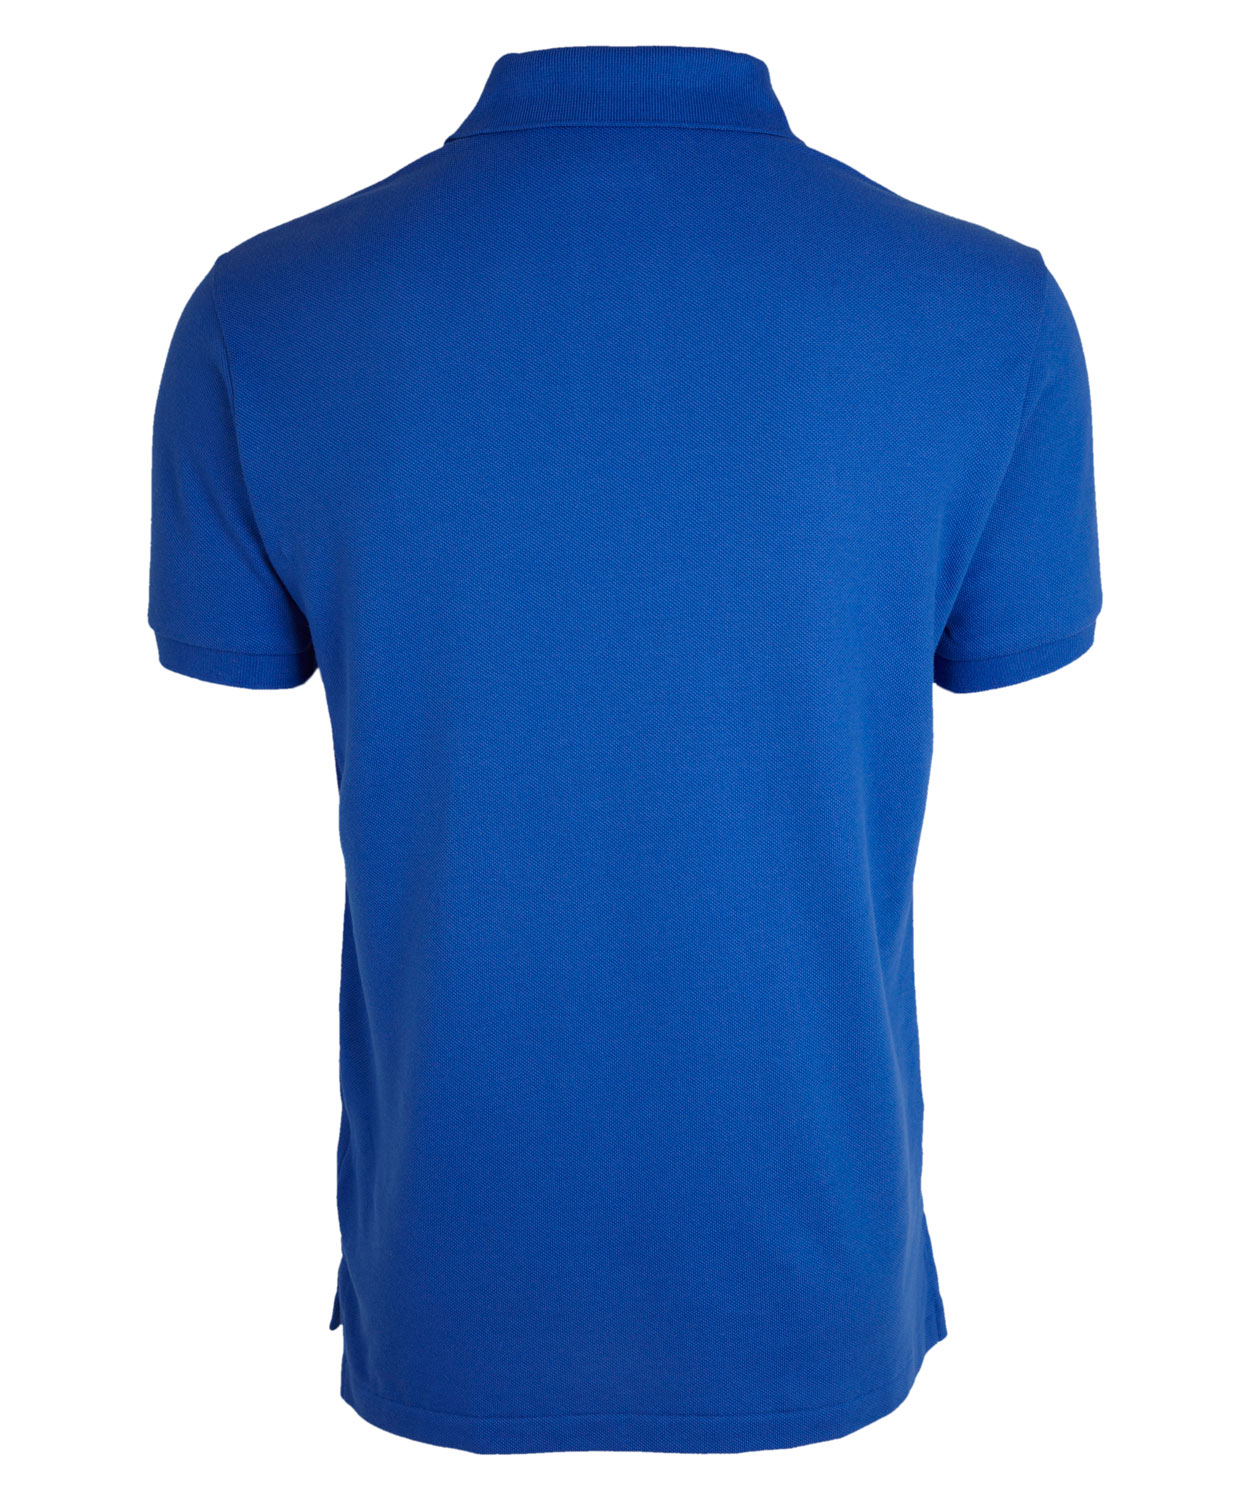 Polo Ralph Lauren Cobalt Blue Polo Shirt for Men - Lyst